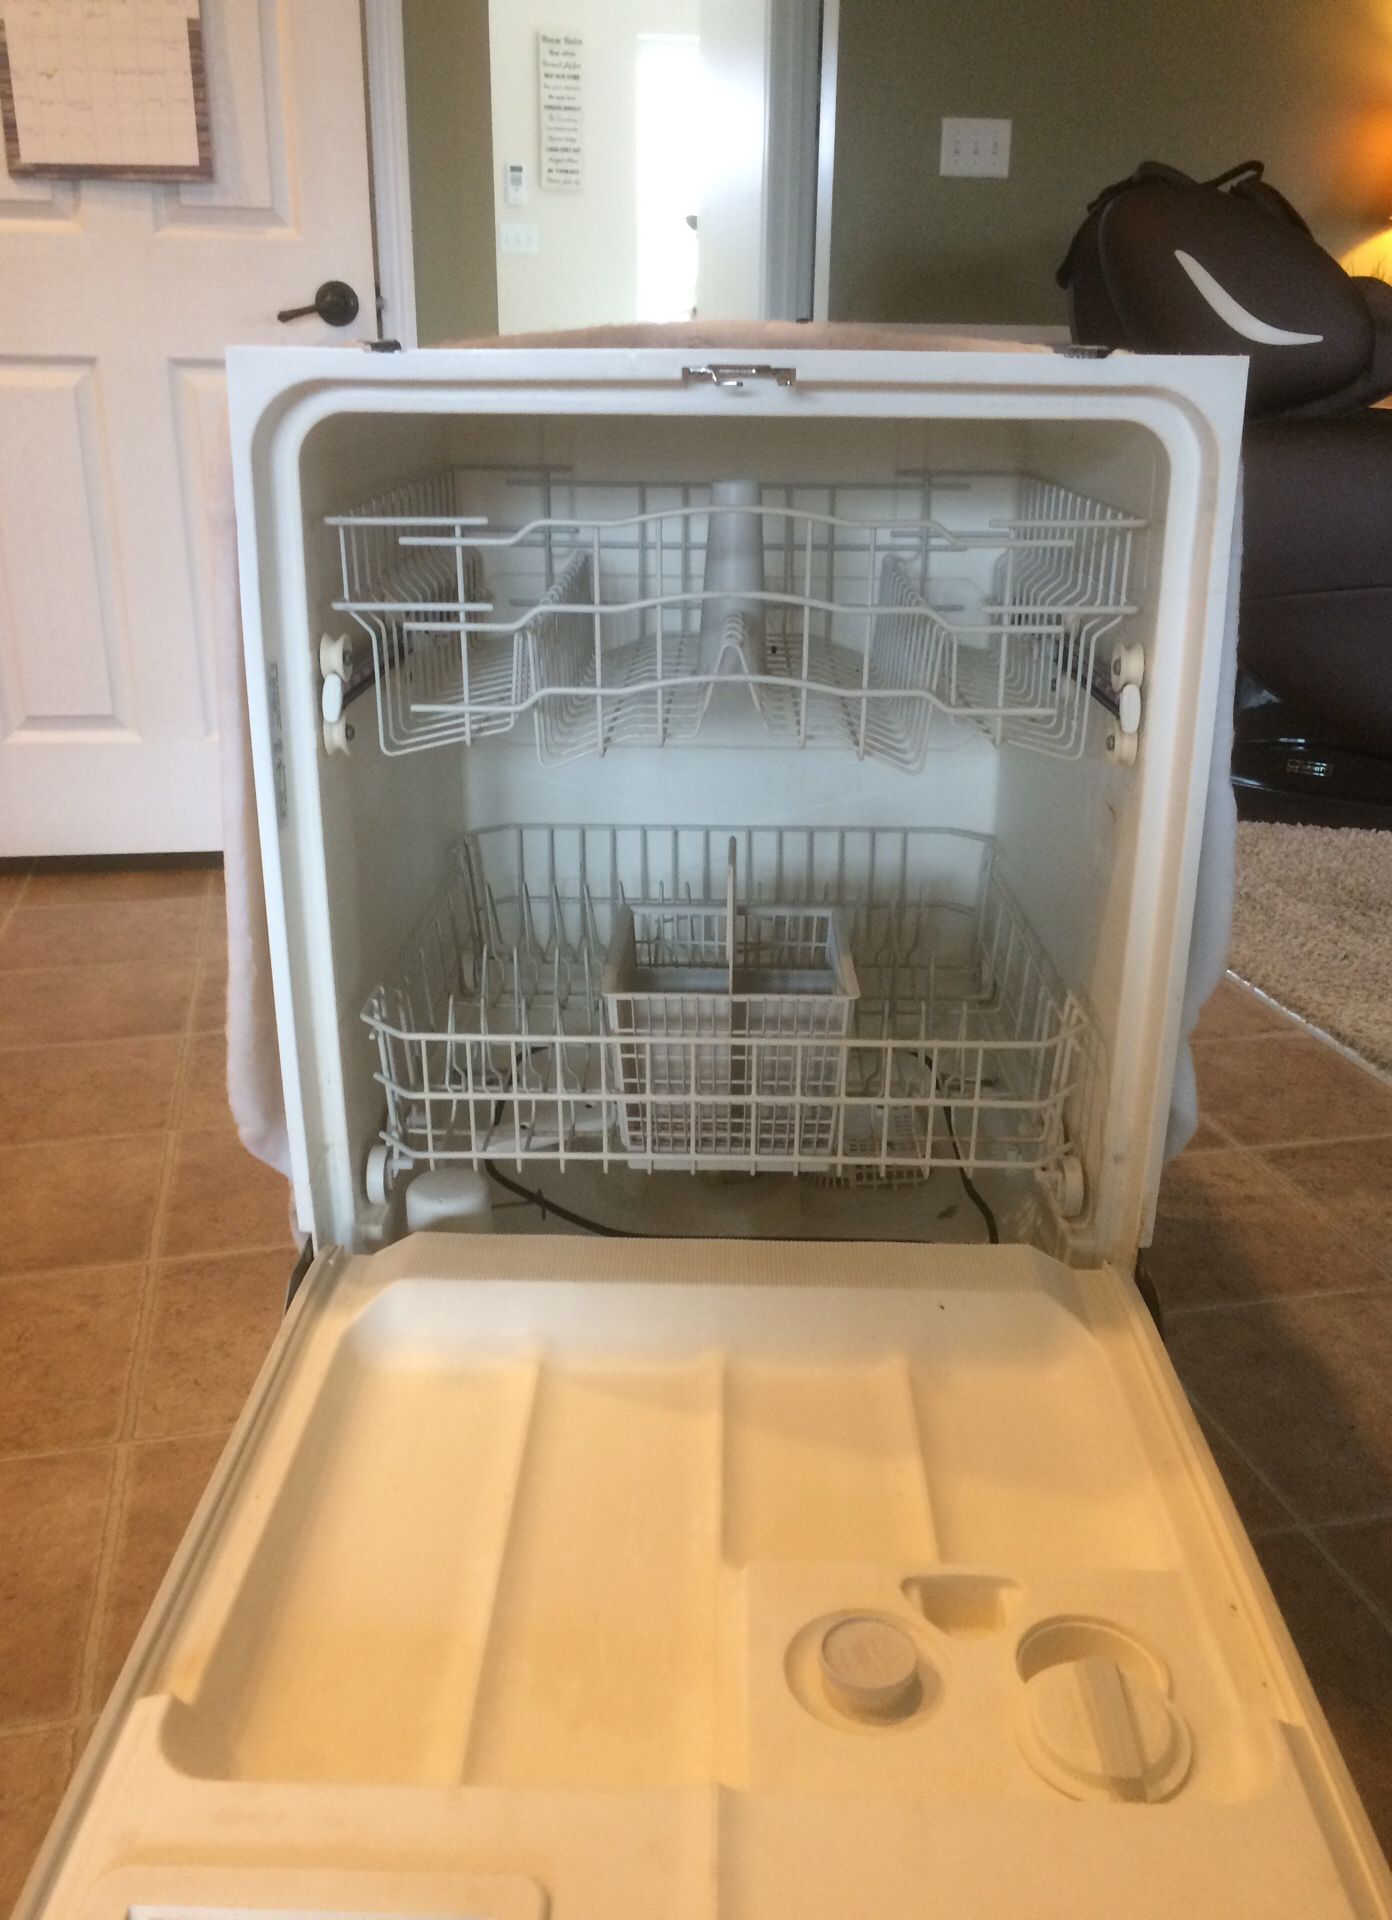 GE dishwasher